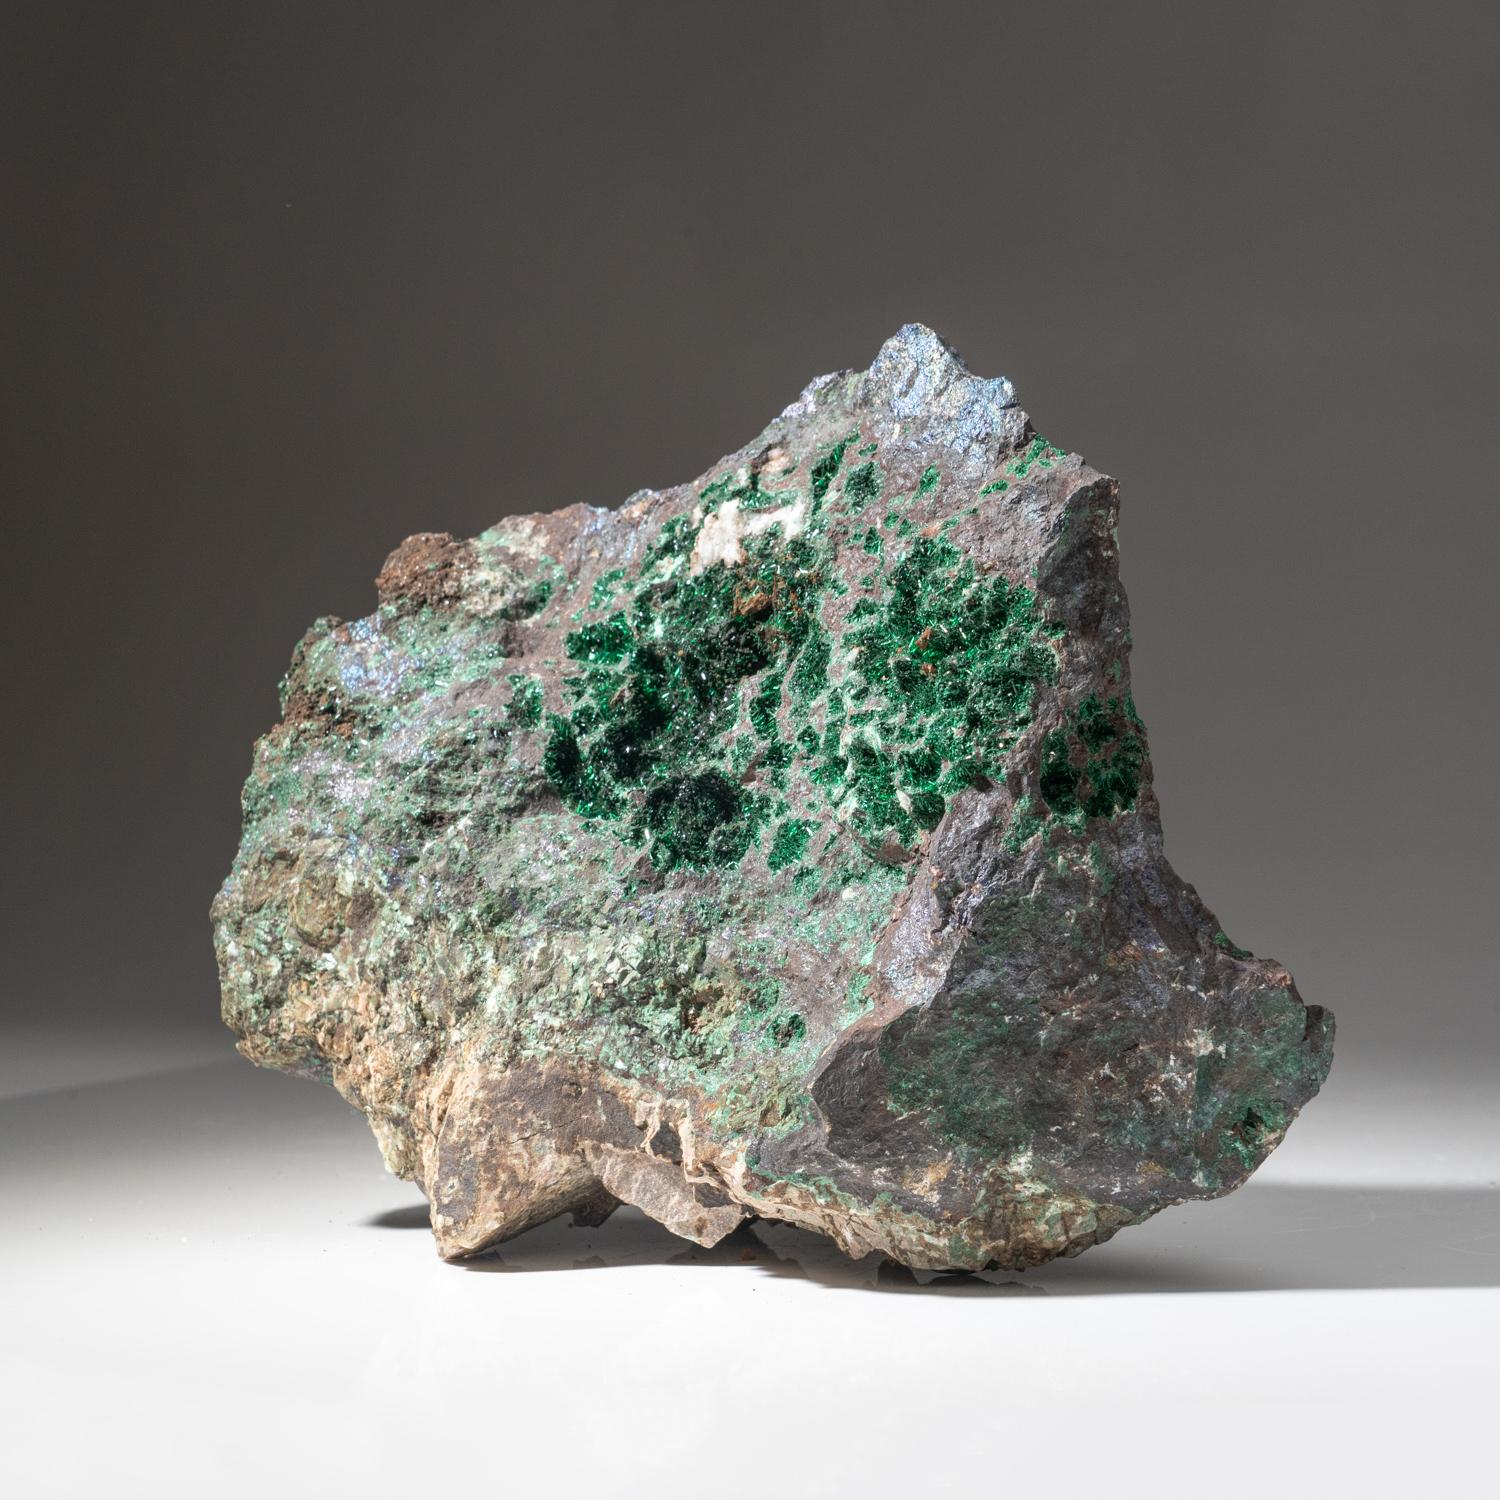 Aus der Provinz Katanga (Shaba), Demokratische Republik Kongo (Zaire)

Glänzend transparente grüne nadelförmige Malachitkristalle, die Hohlräume auf einer Cuprit-Matrix auskleiden. Die Kristalloberfläche hat einen schillernden Glanz mit heller,